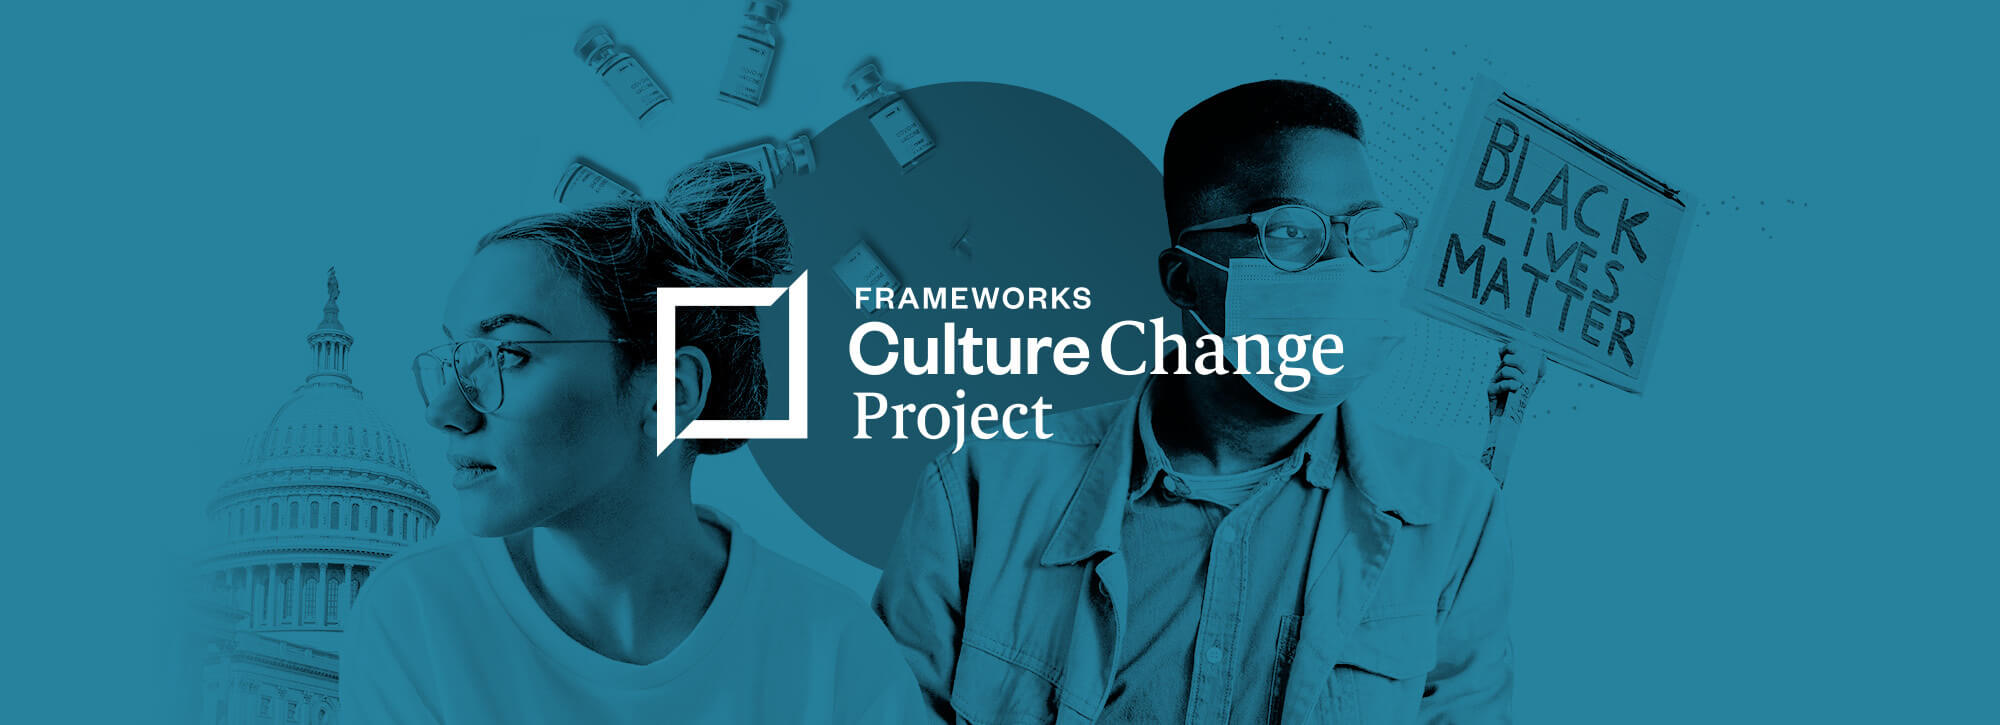 Frameworks Culture Change Project